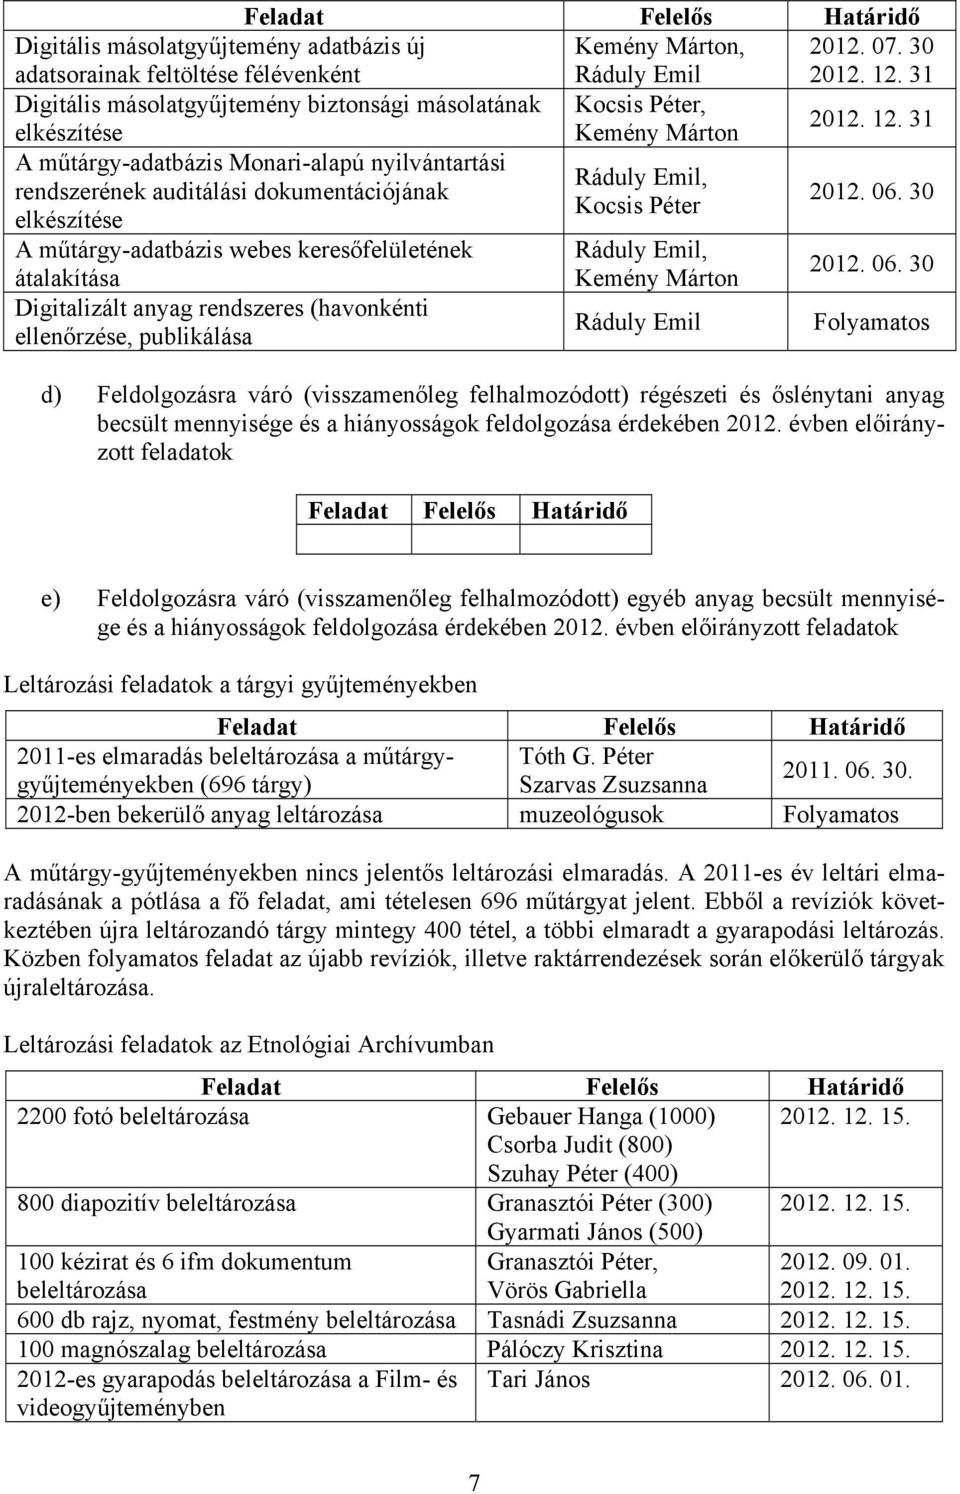 31 A műtárgy-adatbázis Monari-alapú nyilvántartási Ráduly Emil, rendszerének auditálási dokumentációjának Kocsis Péter elkészítése 2012. 06.